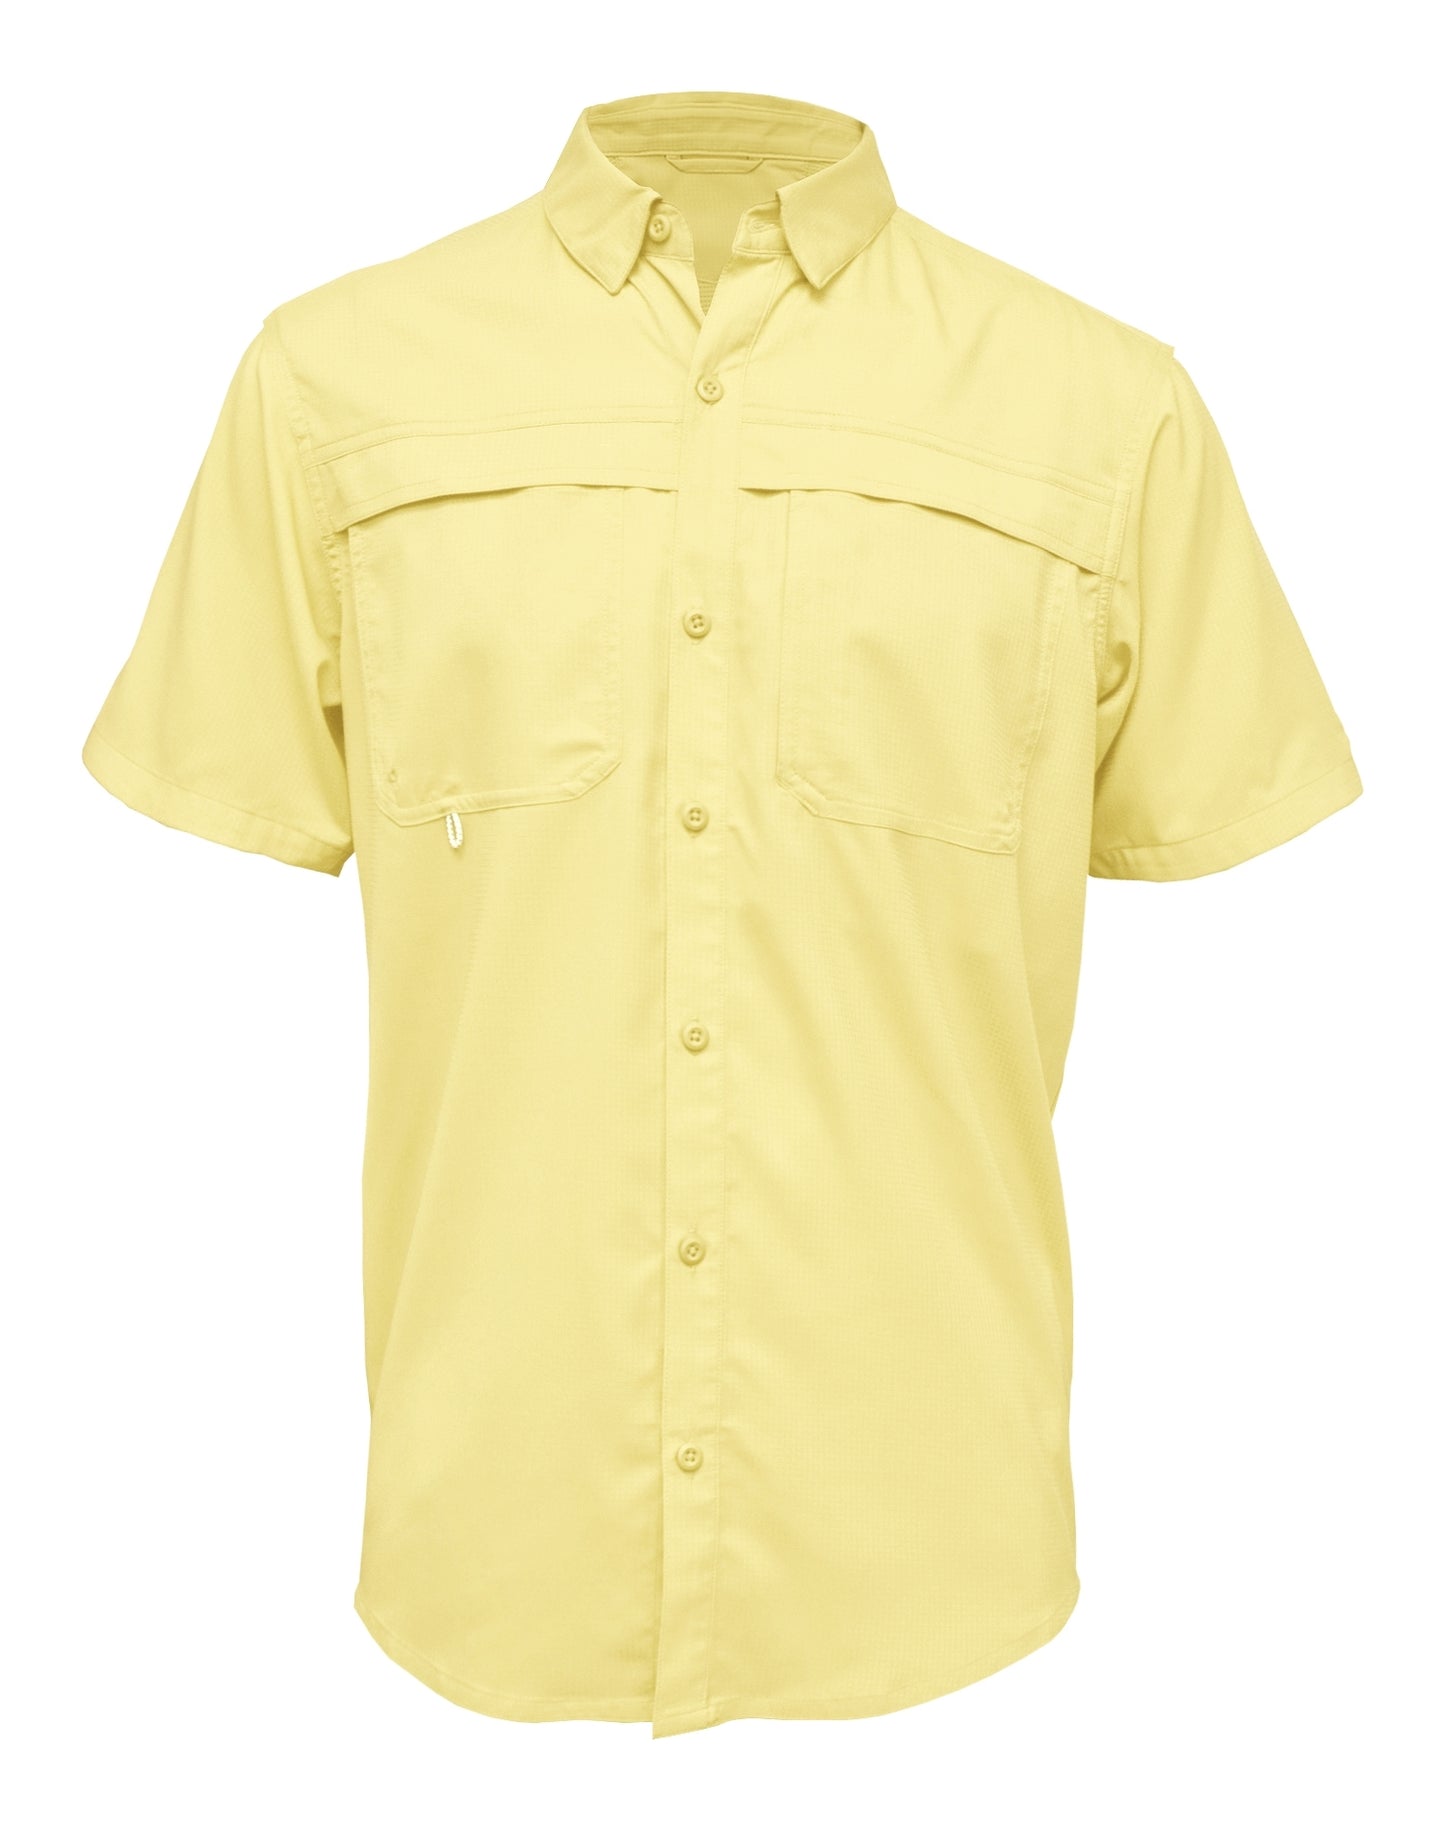 3100 Men's Short Sleeve Fishing Shirt